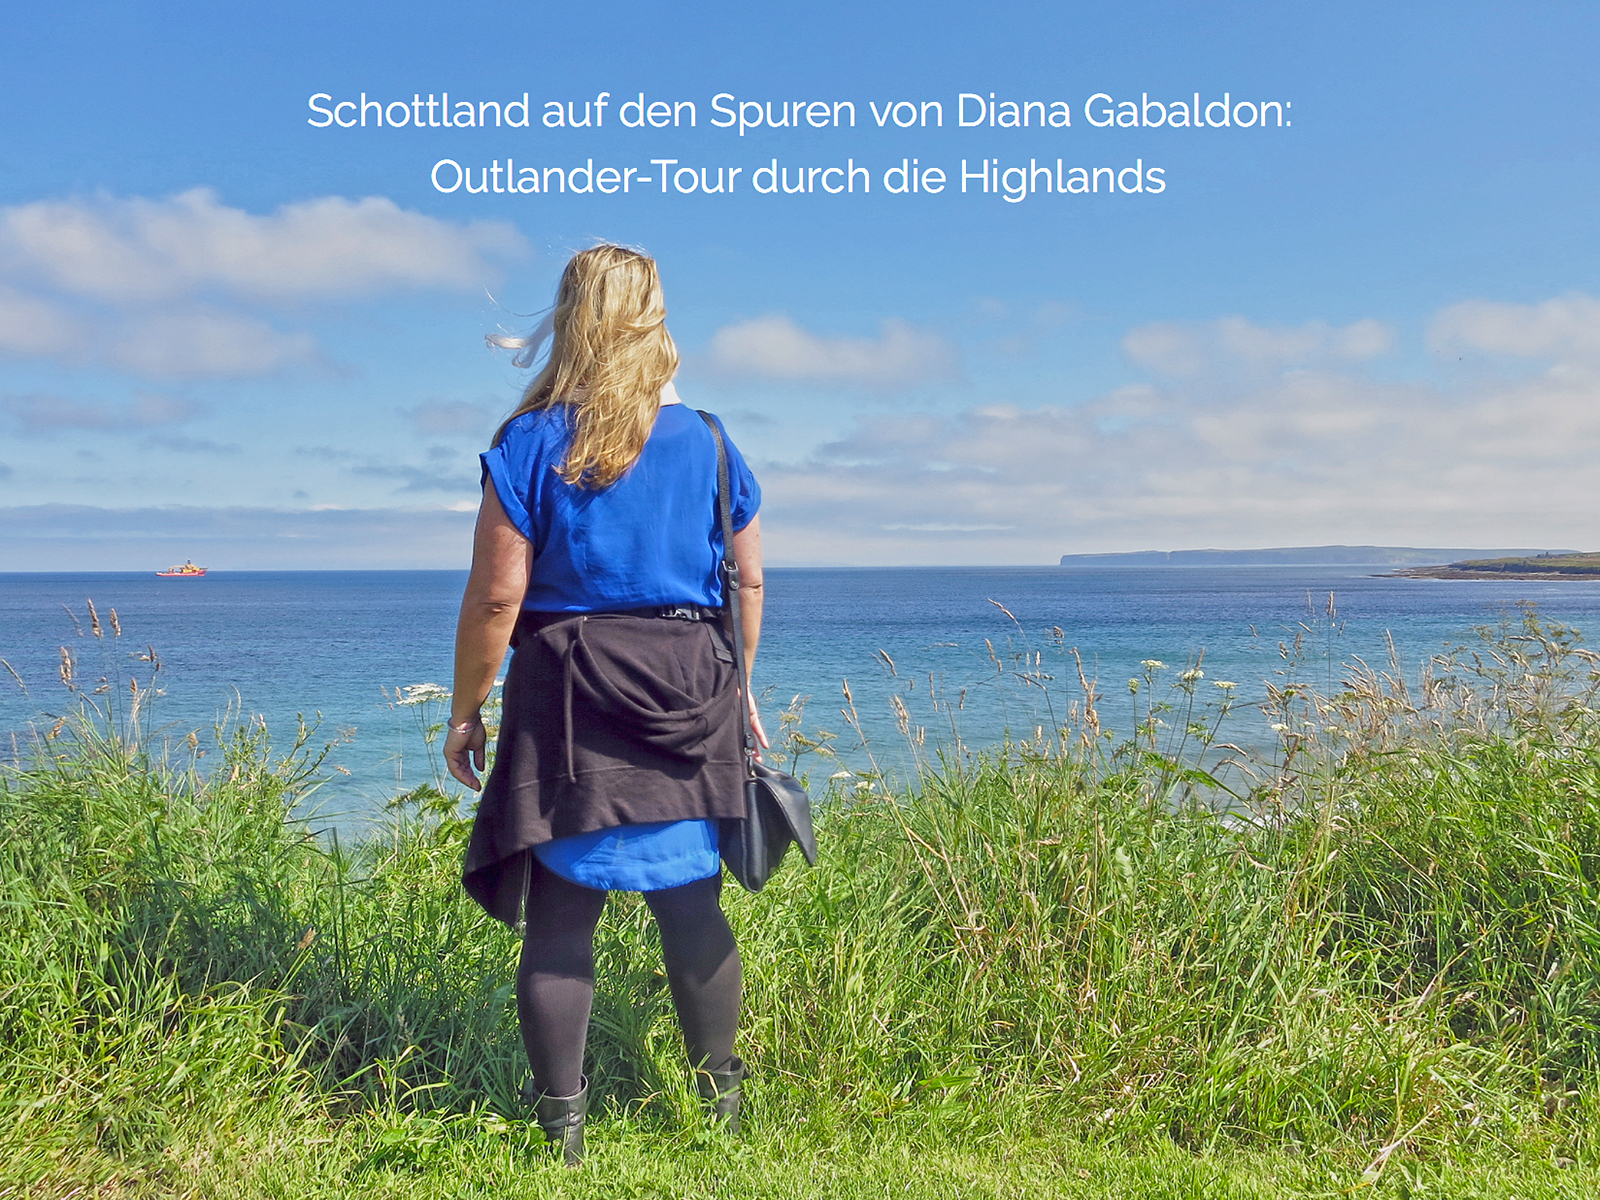 Reise-Special Schottland: Urlaubs-Guide für den nächsten Trip nach Schottland